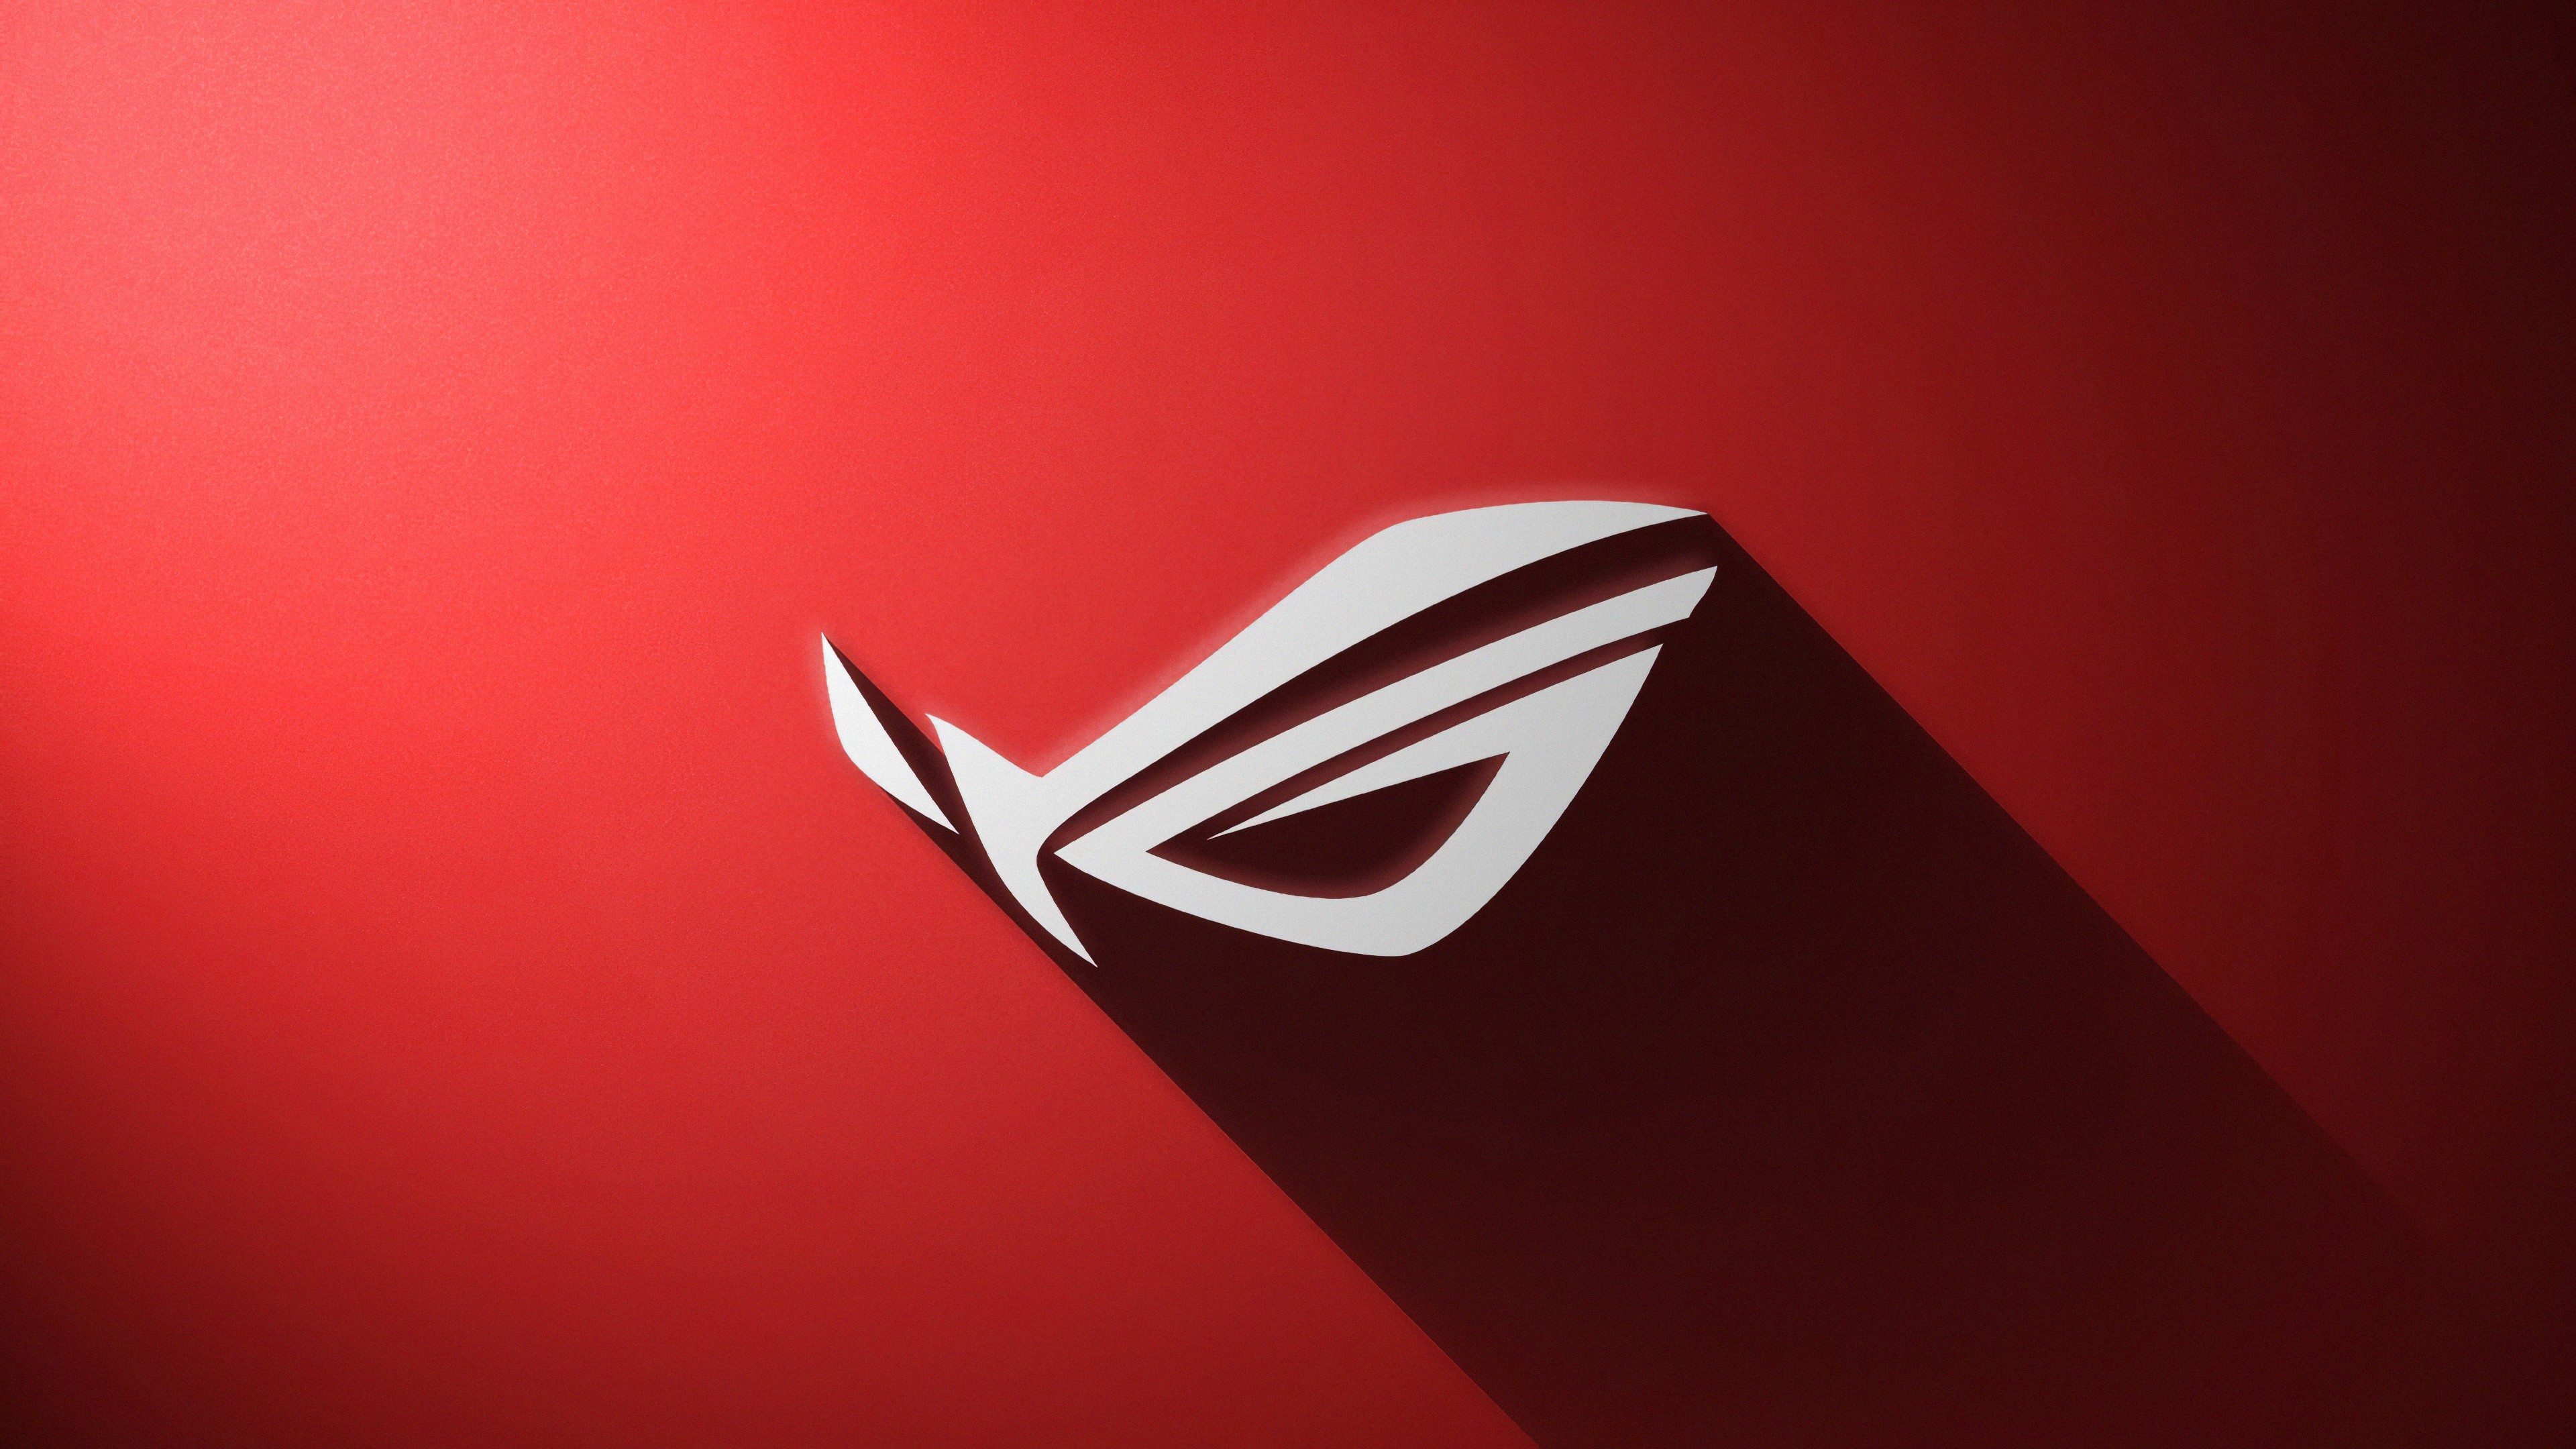 ASUS ROG Red Logo: Để thể hiện sự mạnh mẽ, độc đáo và sự khác biệt của Asus ROG Red Logo, hình ảnh này đem lại cái nhìn mới mẻ và sức hấp dẫn đến từ những người sử dụng và yêu thích thương hiệu Asus.